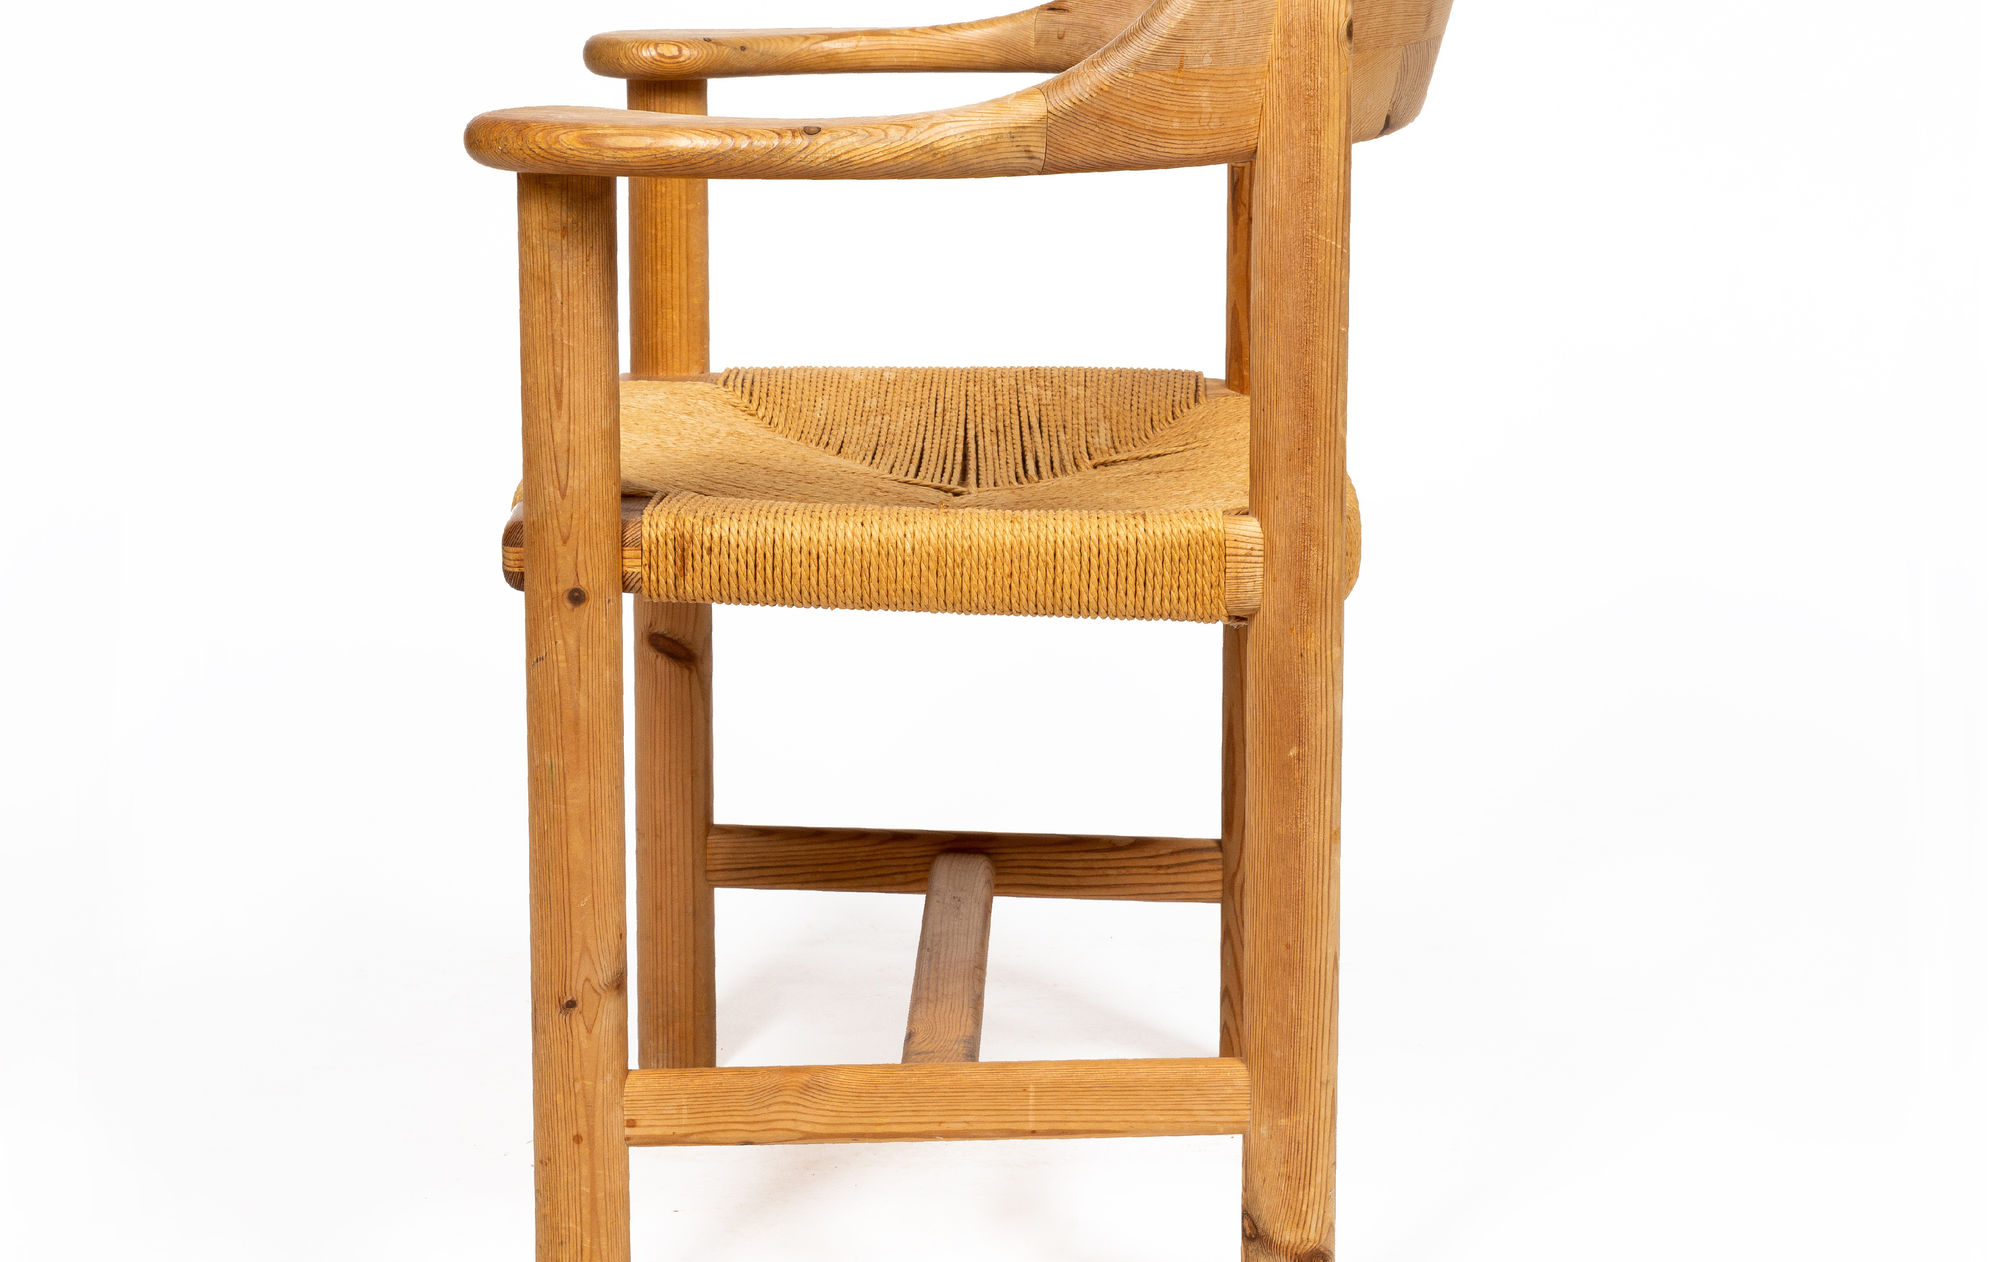 Fir tree chair by Rainer Daumiller